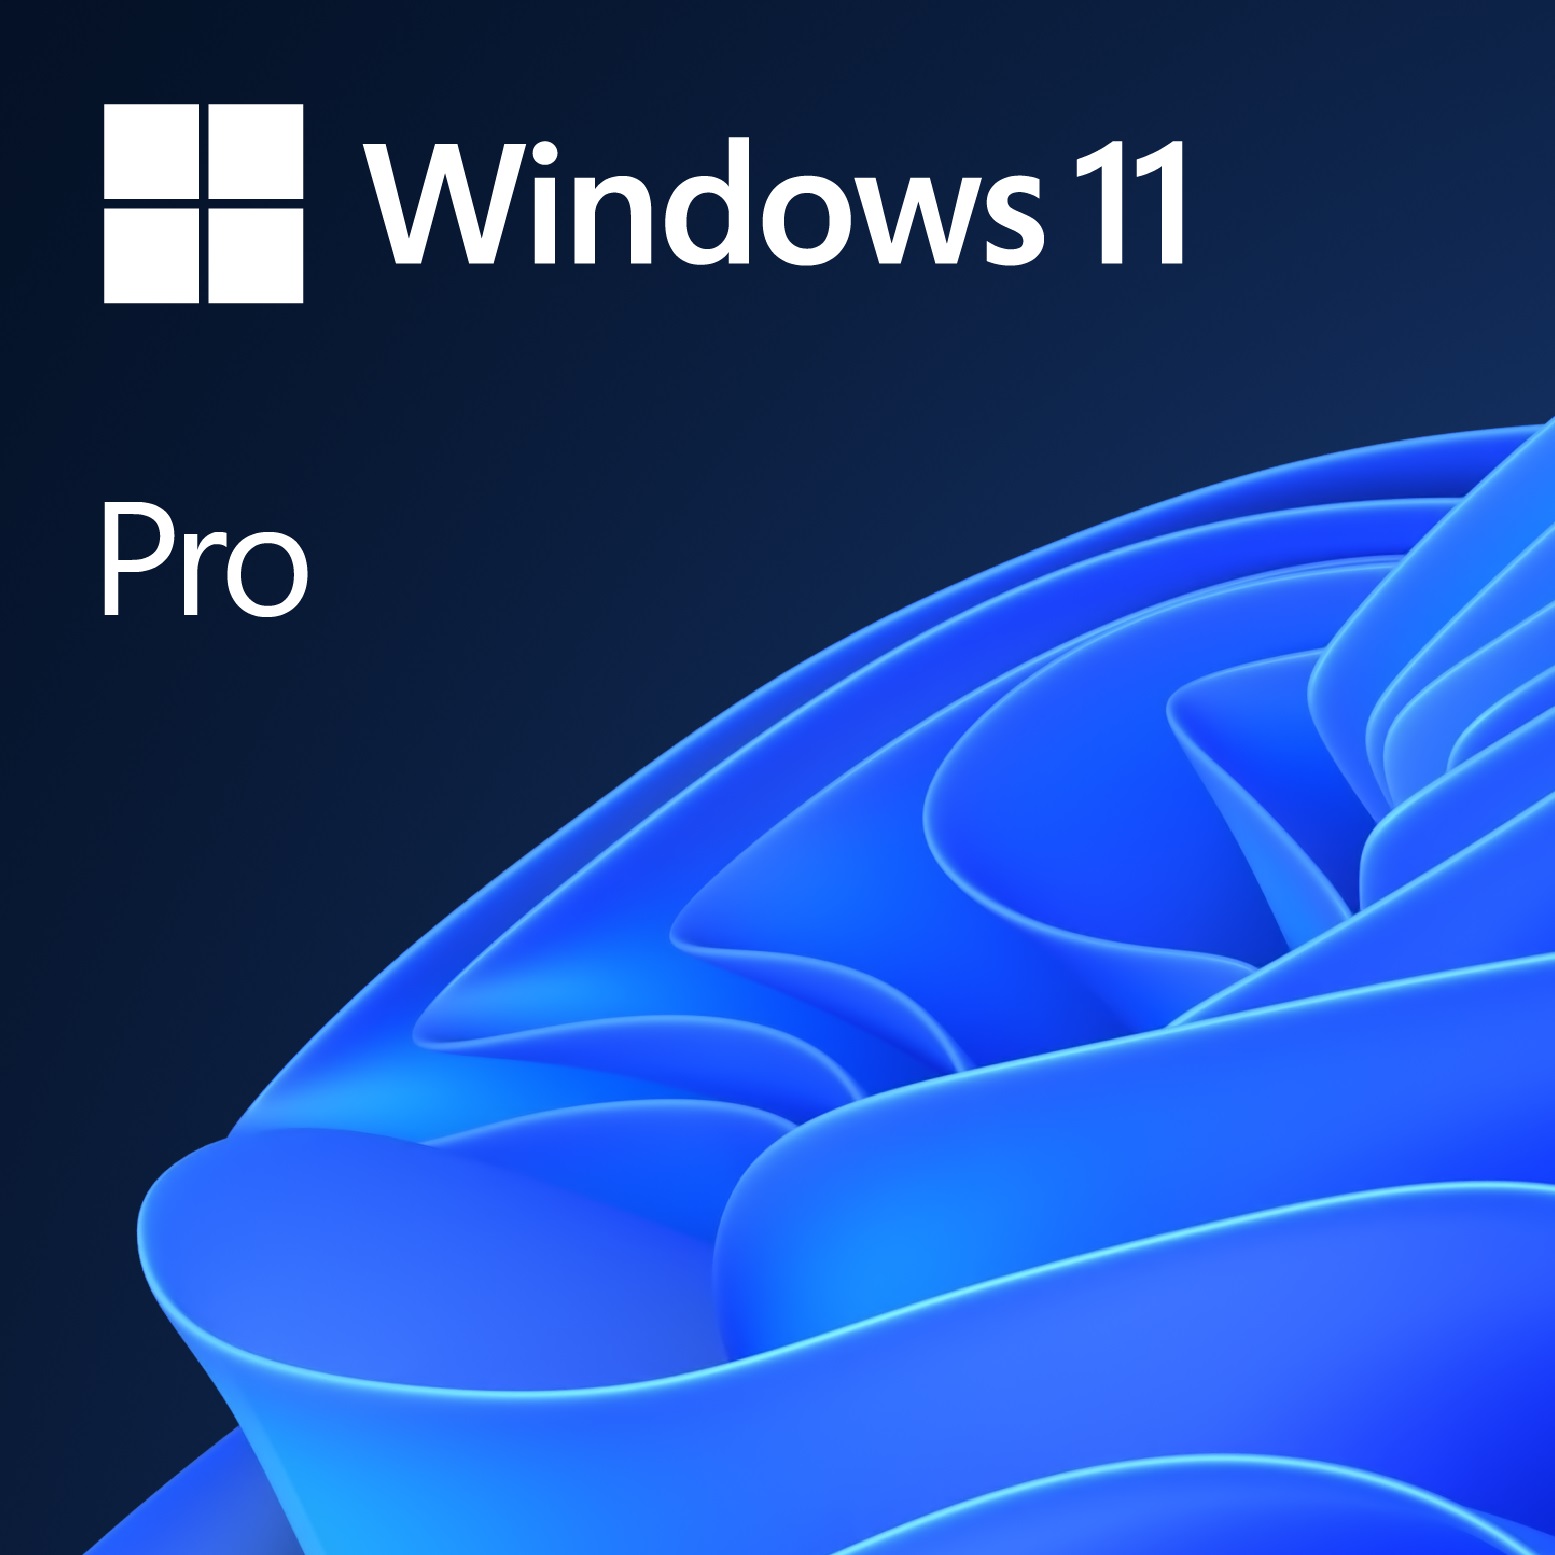 Windows 11 Pro 